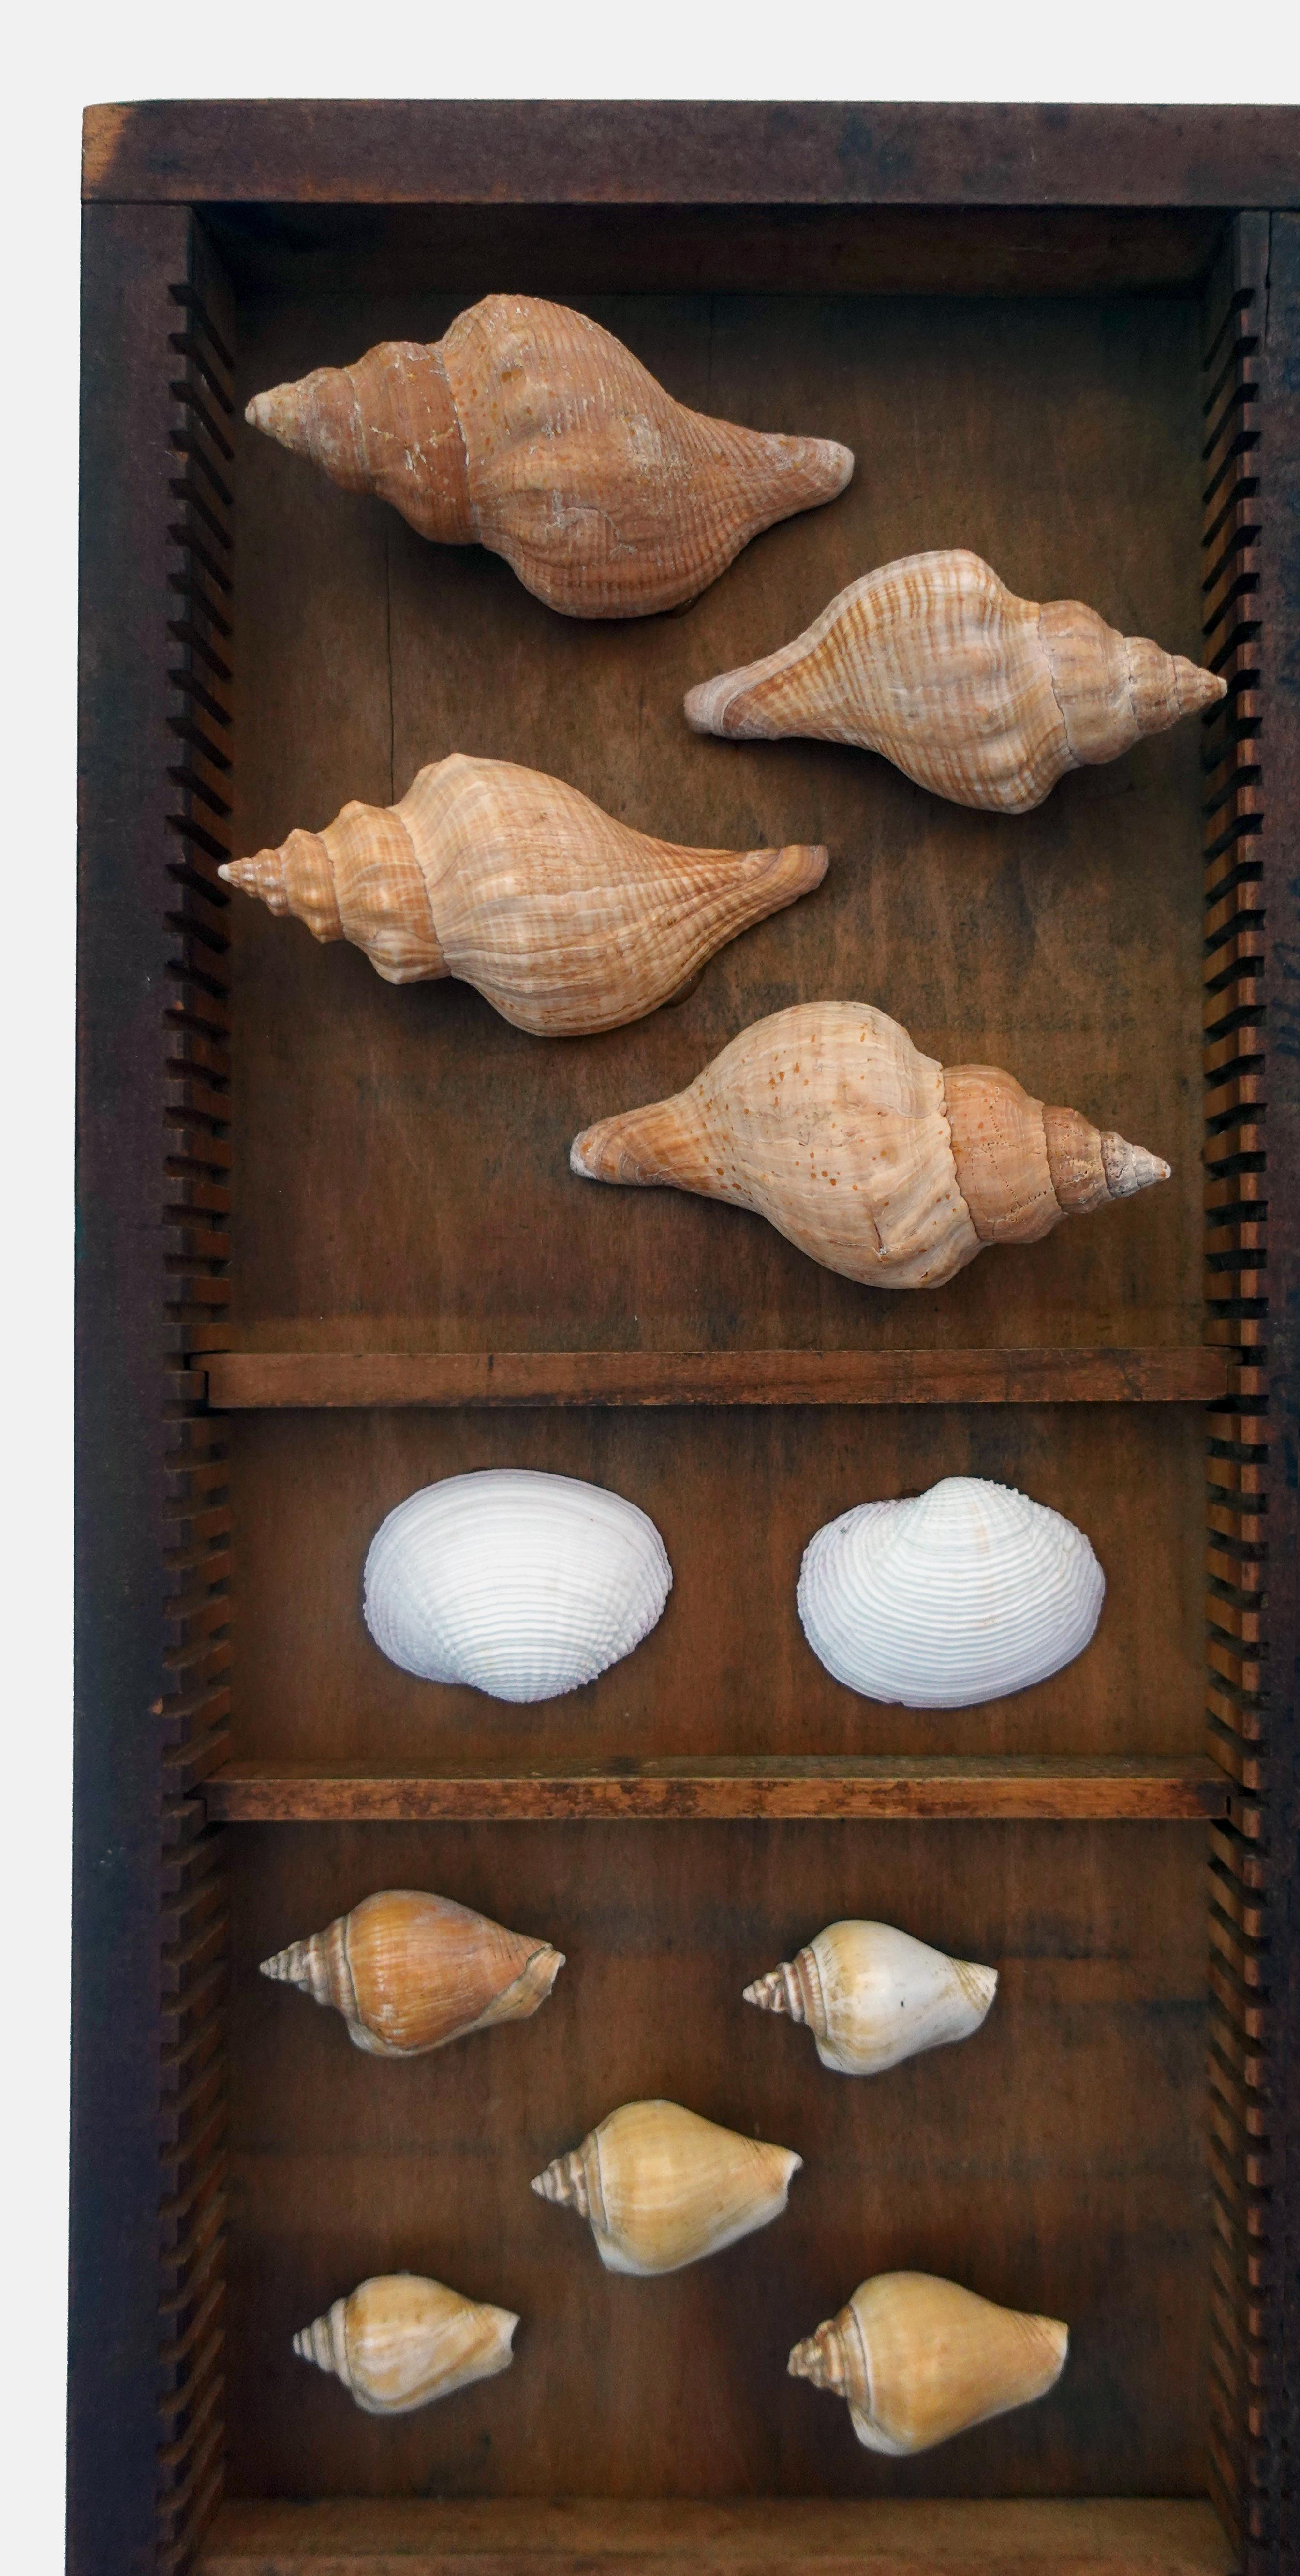 Collection Collectional S 

Dimensions approximatives : 13,5 x 17,5 x 2 pouces

Une belle collection de divers coquillages montés, y compris des espèces de murex, des bulots, des cônes et des huîtres épineuses. Cet ensemble fait partie d'une